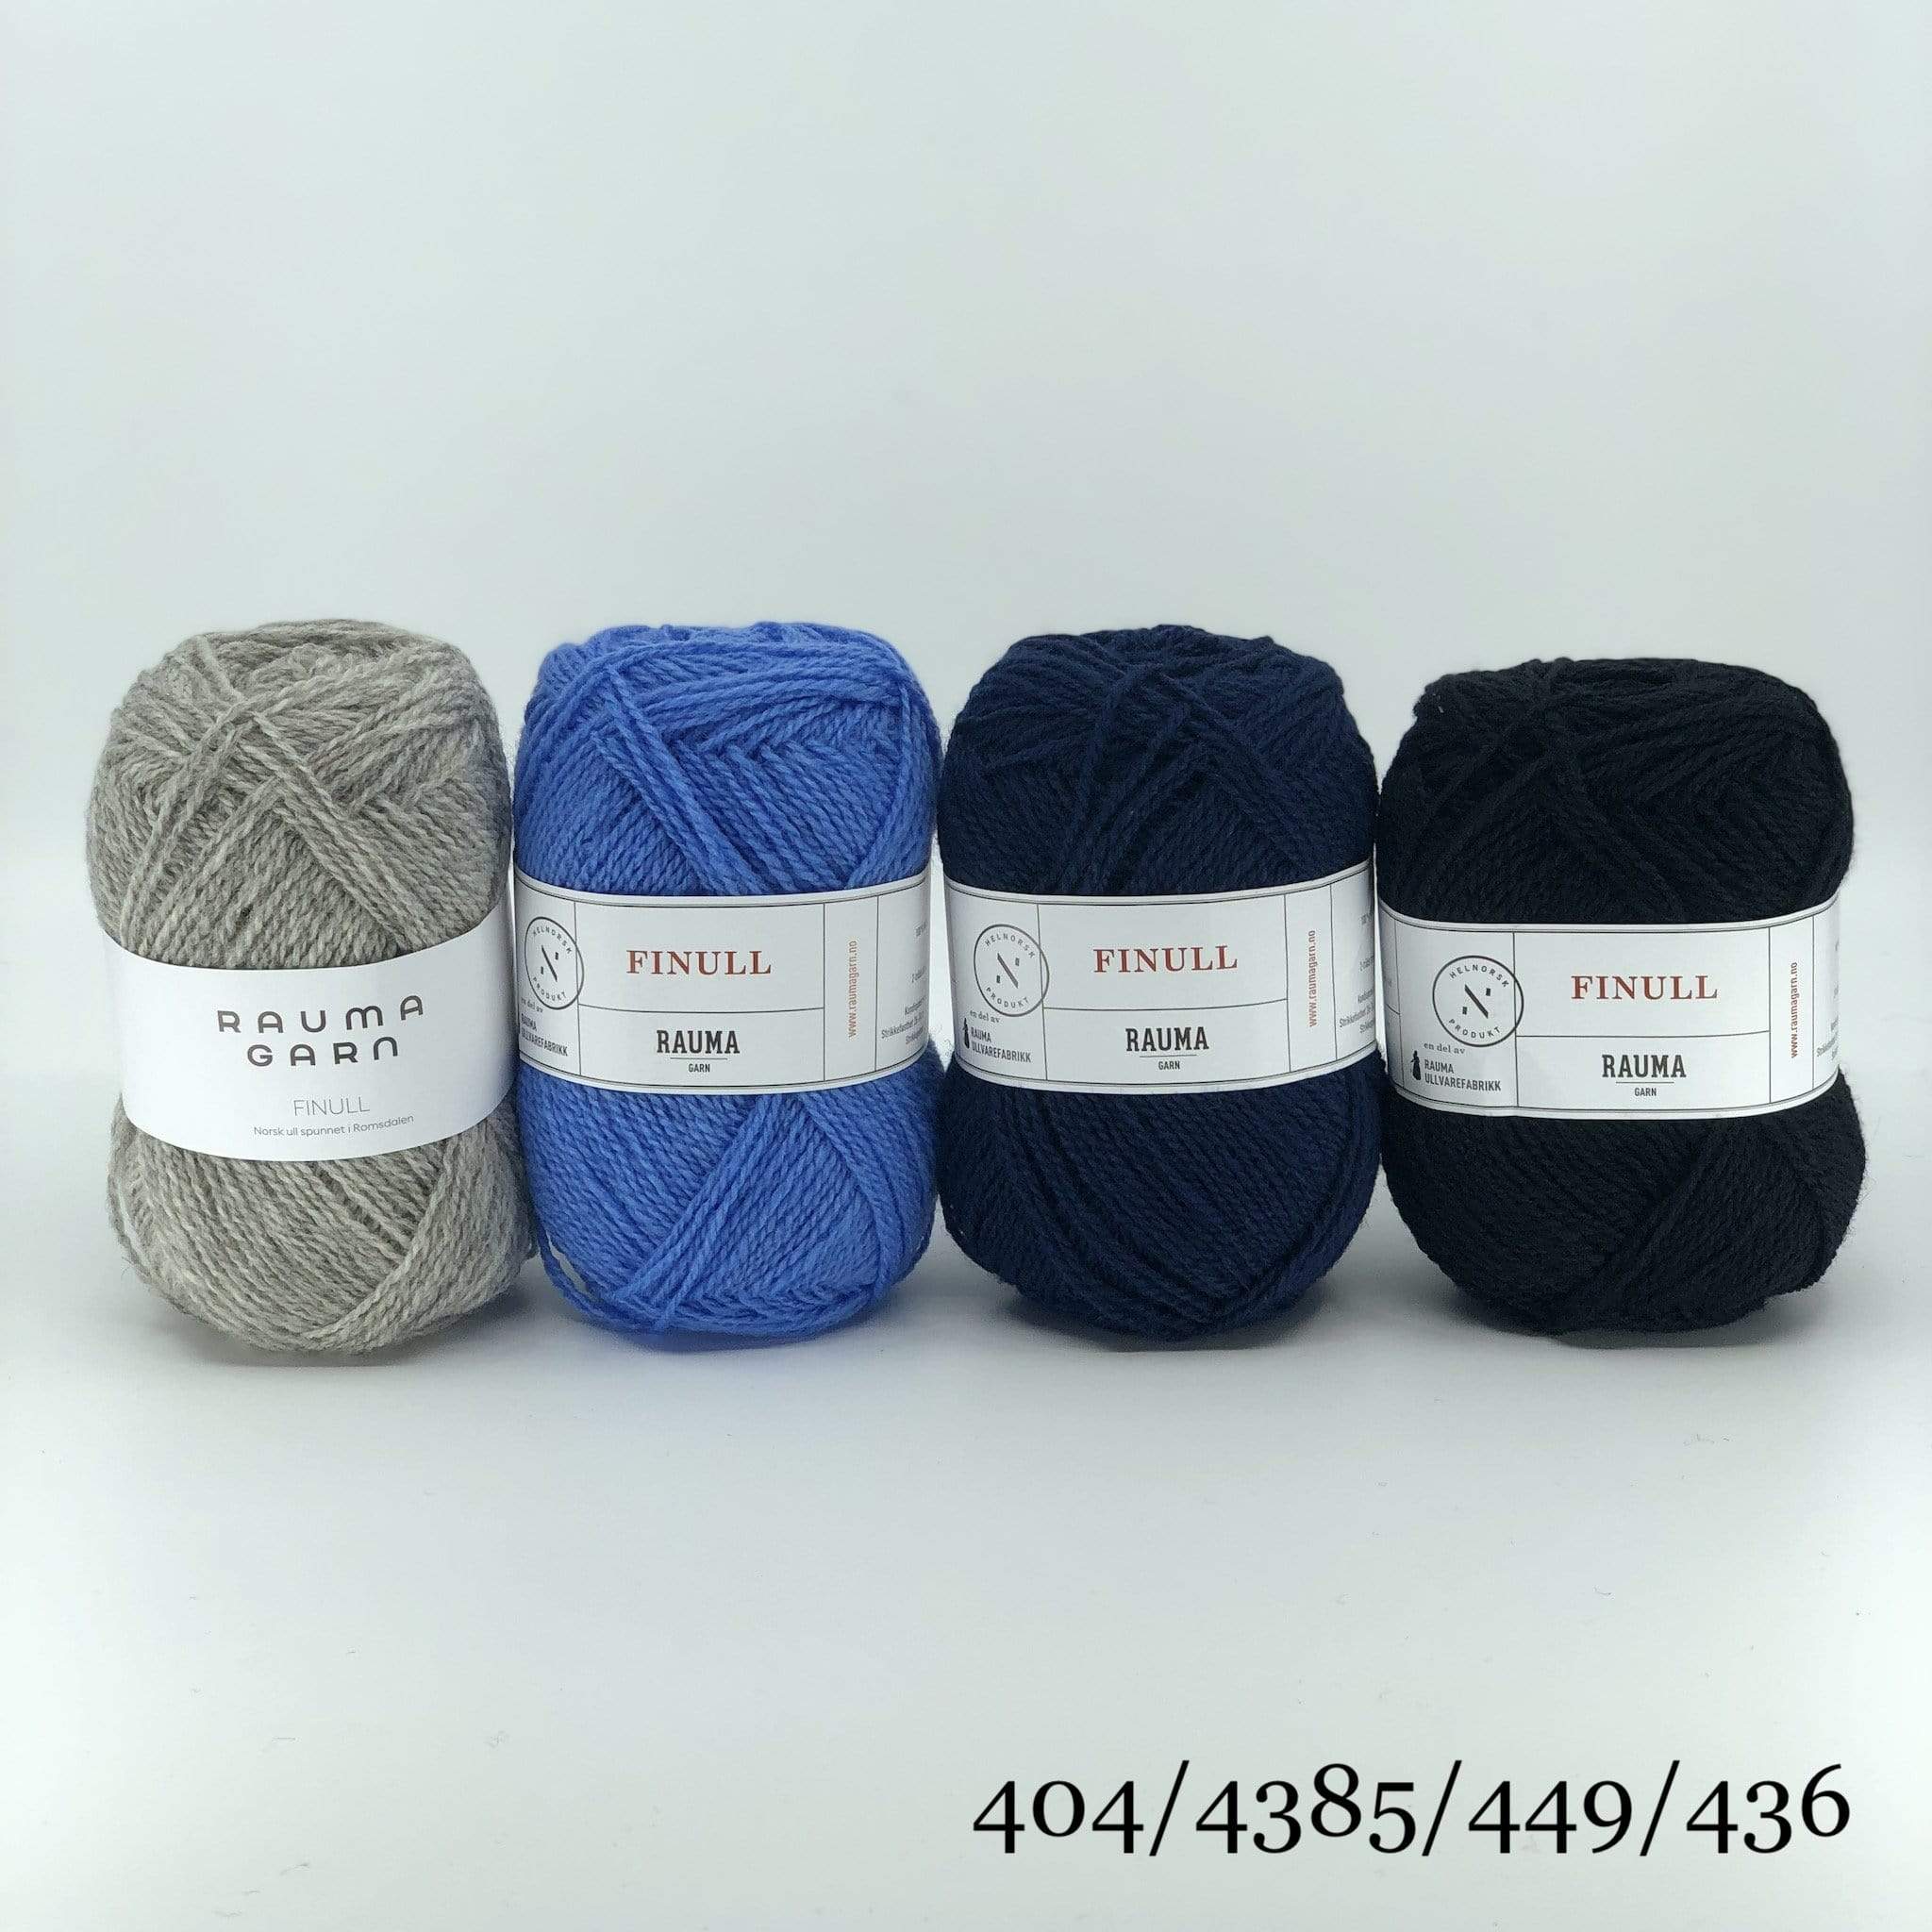 The Woolly Thistle Varde Yoke Sweater 275R in Rauma Finullgarn- 4 balls of Rauma Garn yarn in grey, blue, dark blue, and black